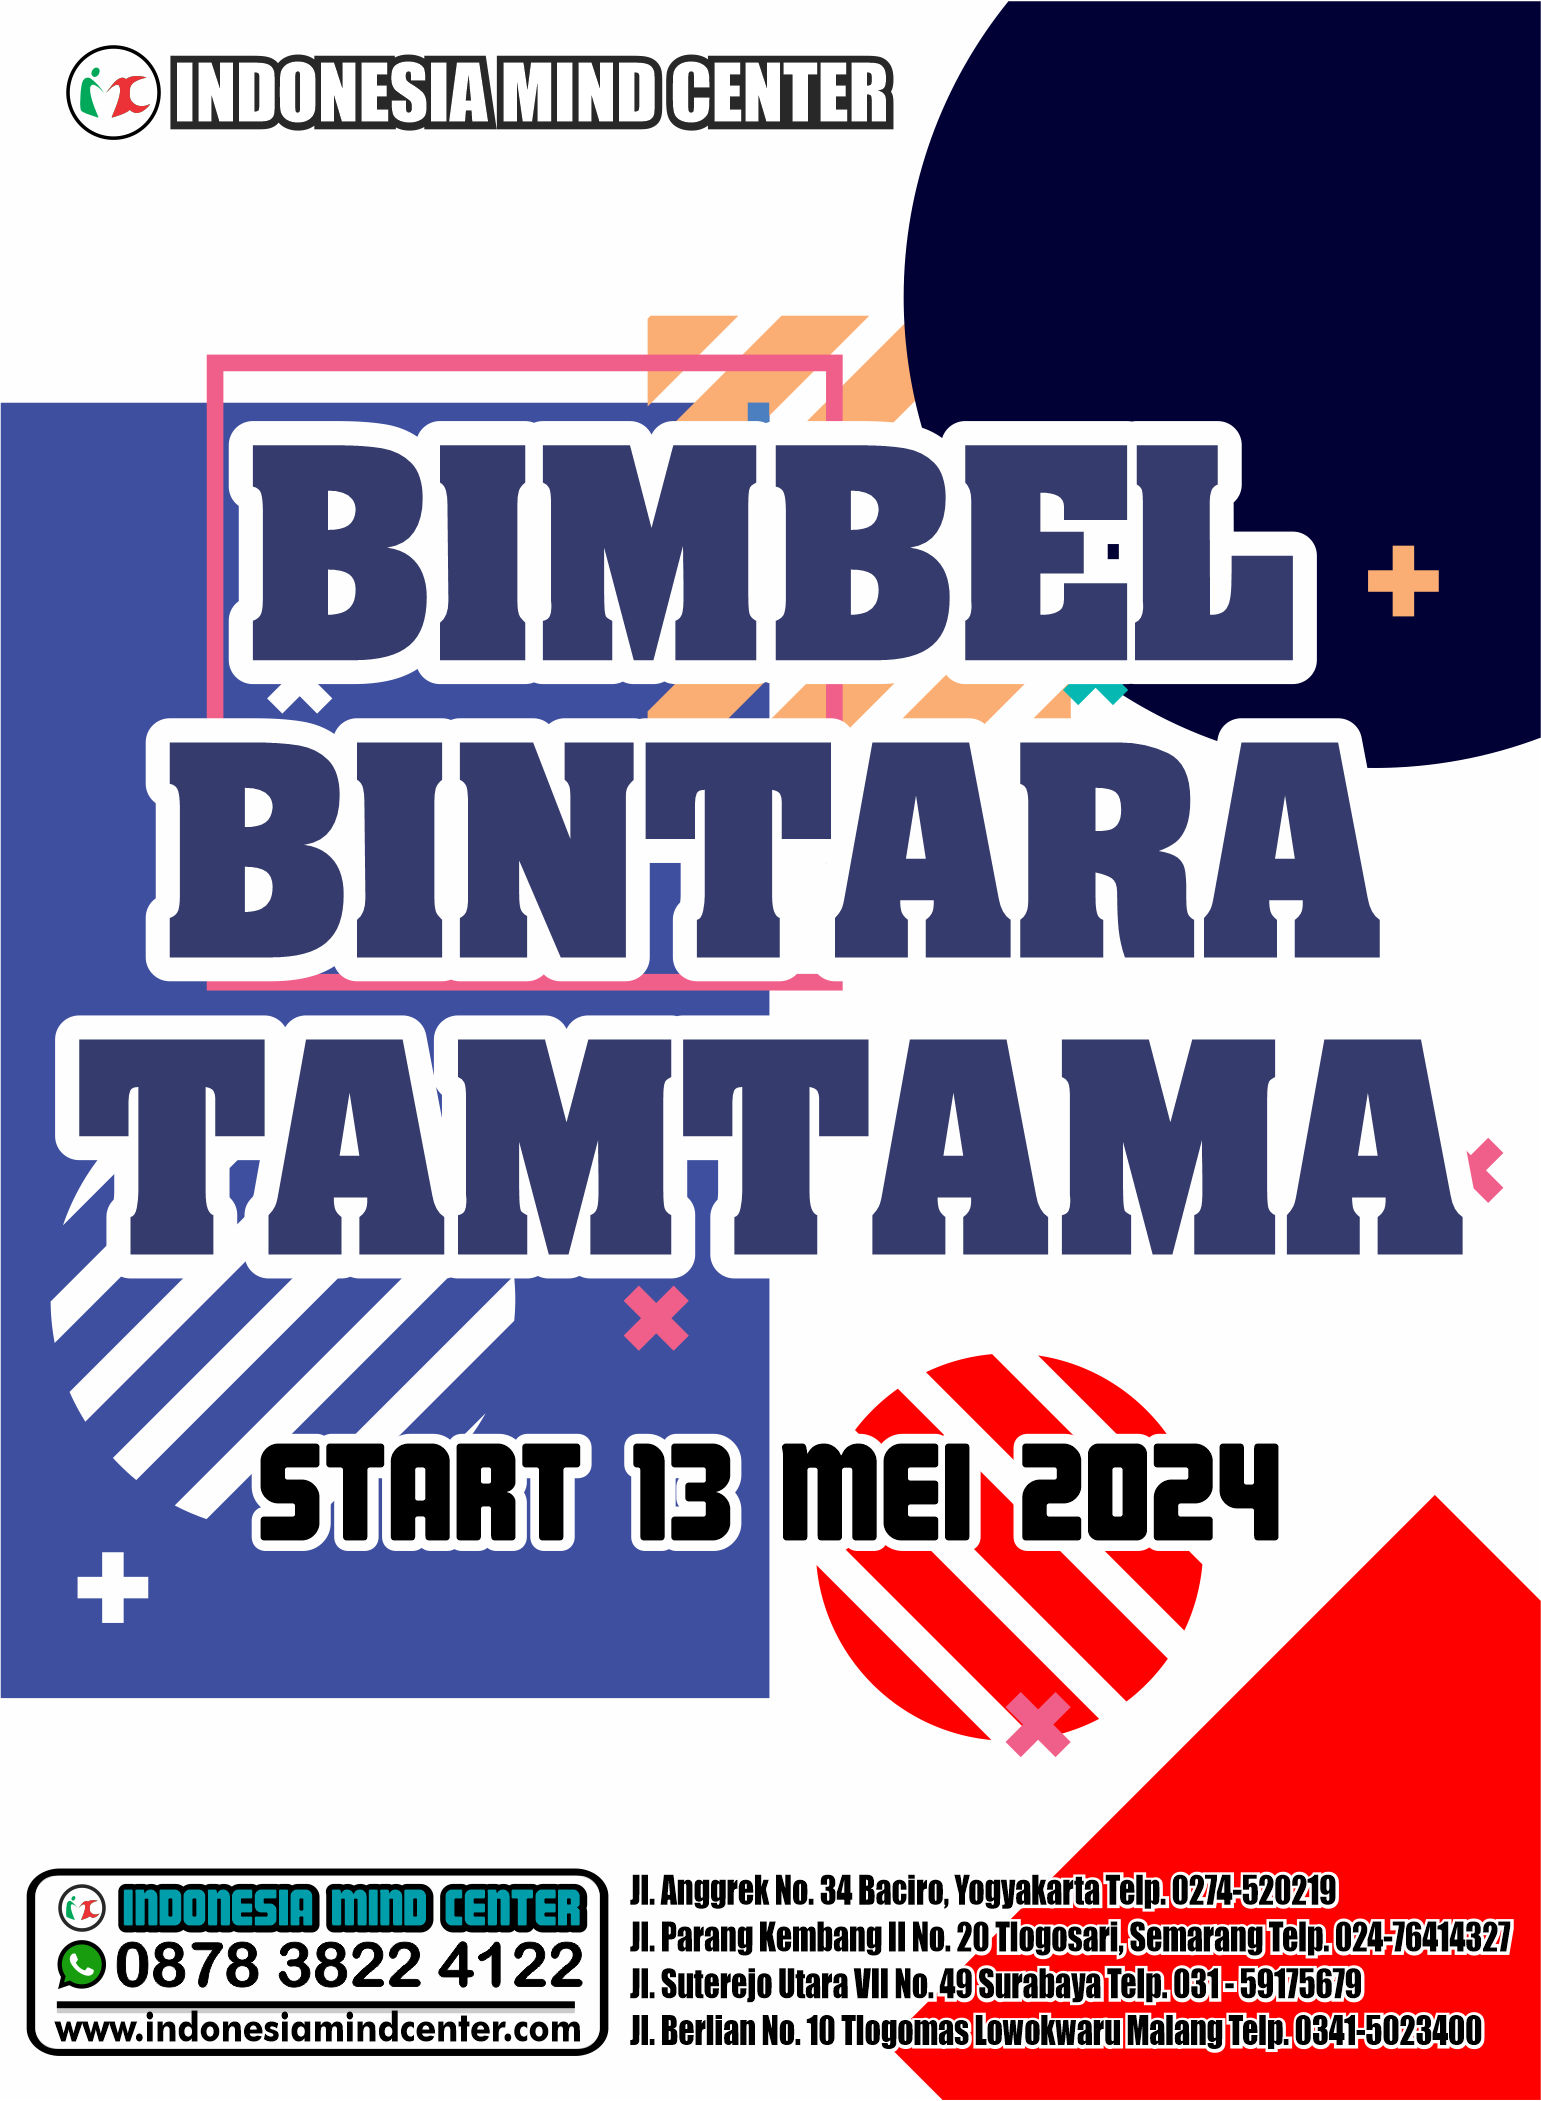 BIMBEL BINTARA TAMTAMA START 13 MEI 2024